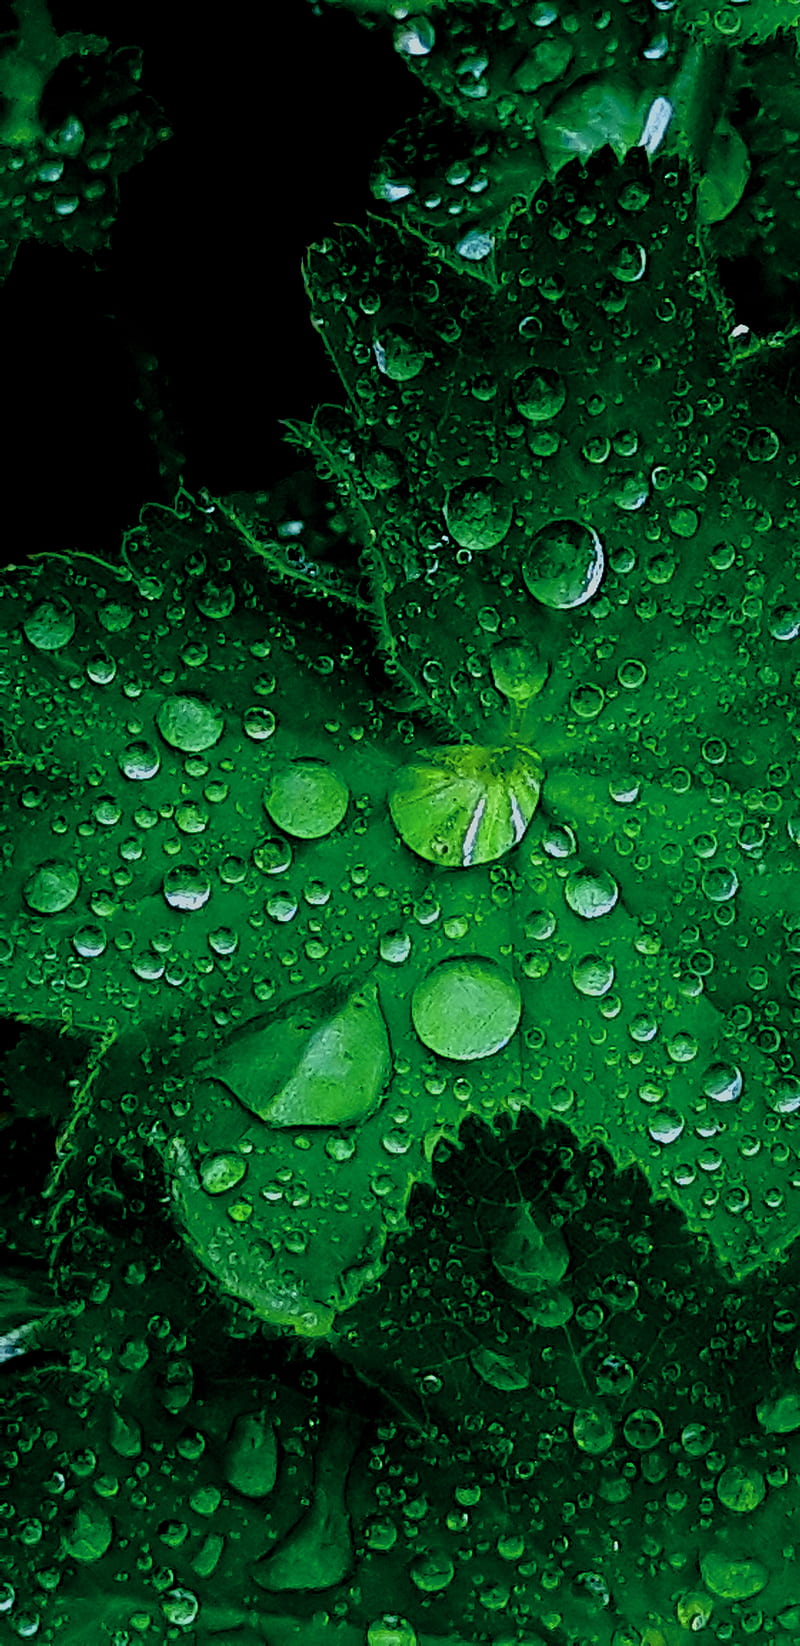 Lá xanh giọt mưa sẽ làm cho tâm trí của bạn cảm thụ được vẻ đẹp đầy tinh túy của một ngày mưa. Với những giọt nước trong veo ướt đẫm trên lá xanh, hình ảnh sẽ trở nên cảm động và đầy lôi cuốn.